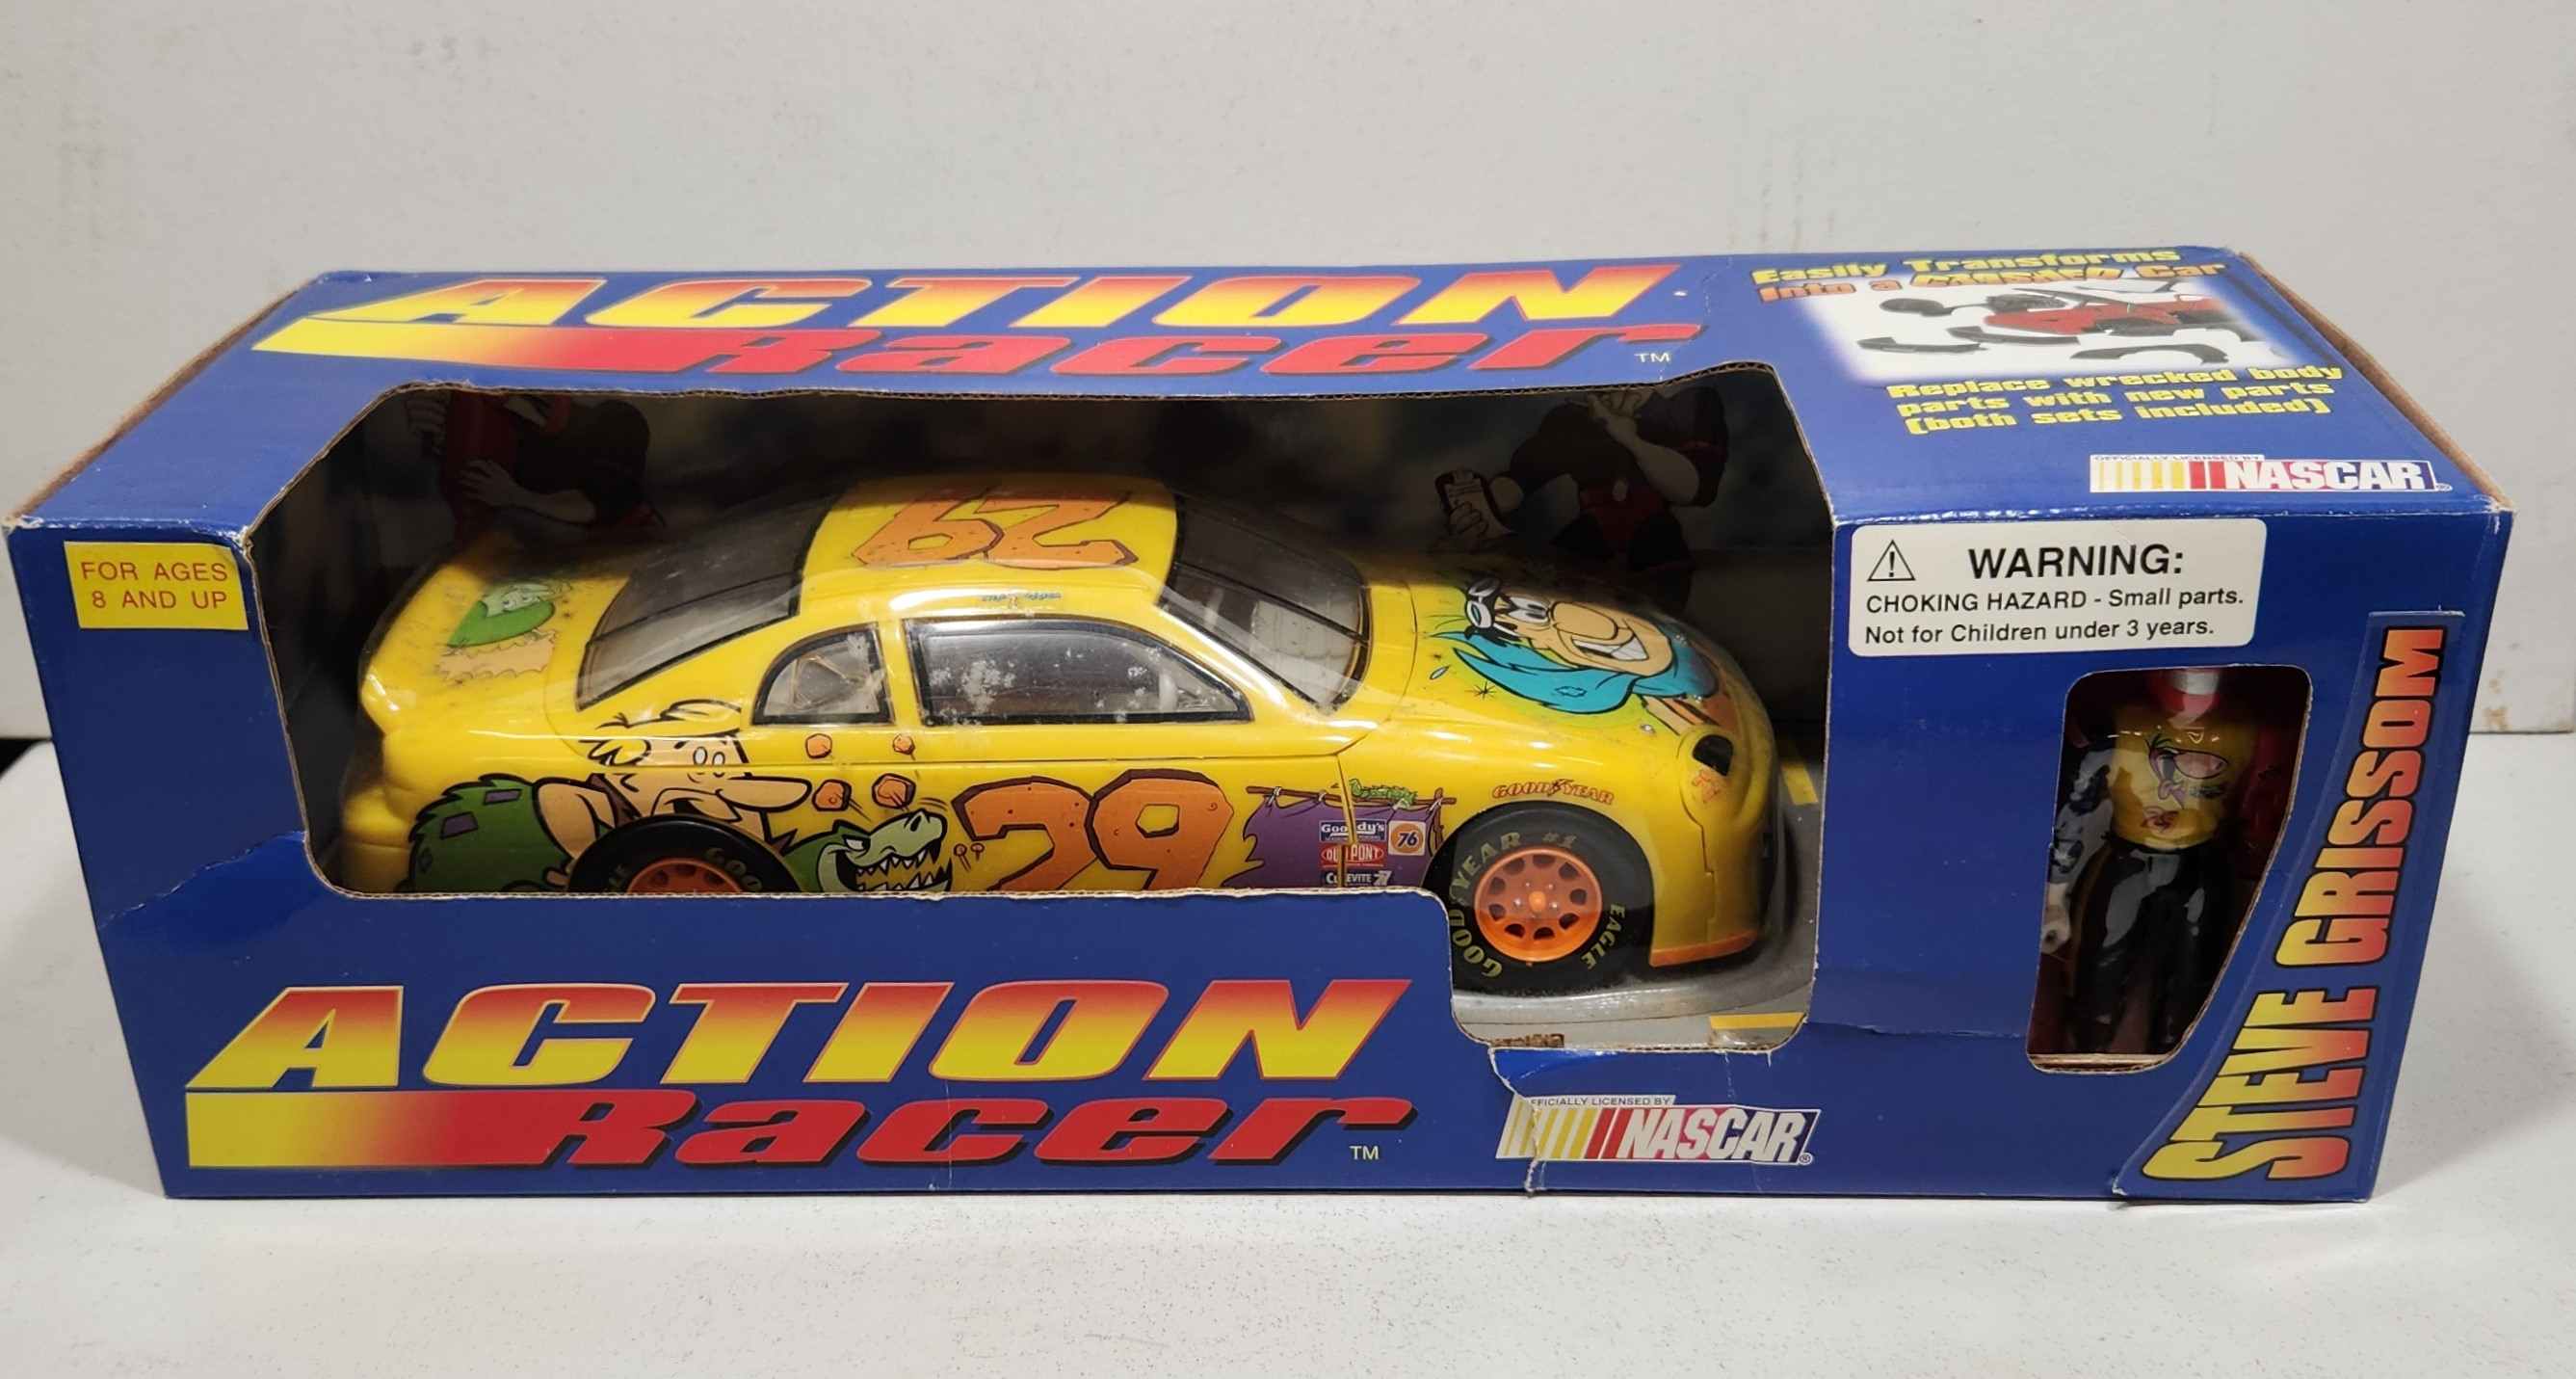 1996 Steve Grissom 1/18th Cartoon Network "Action Racer" car